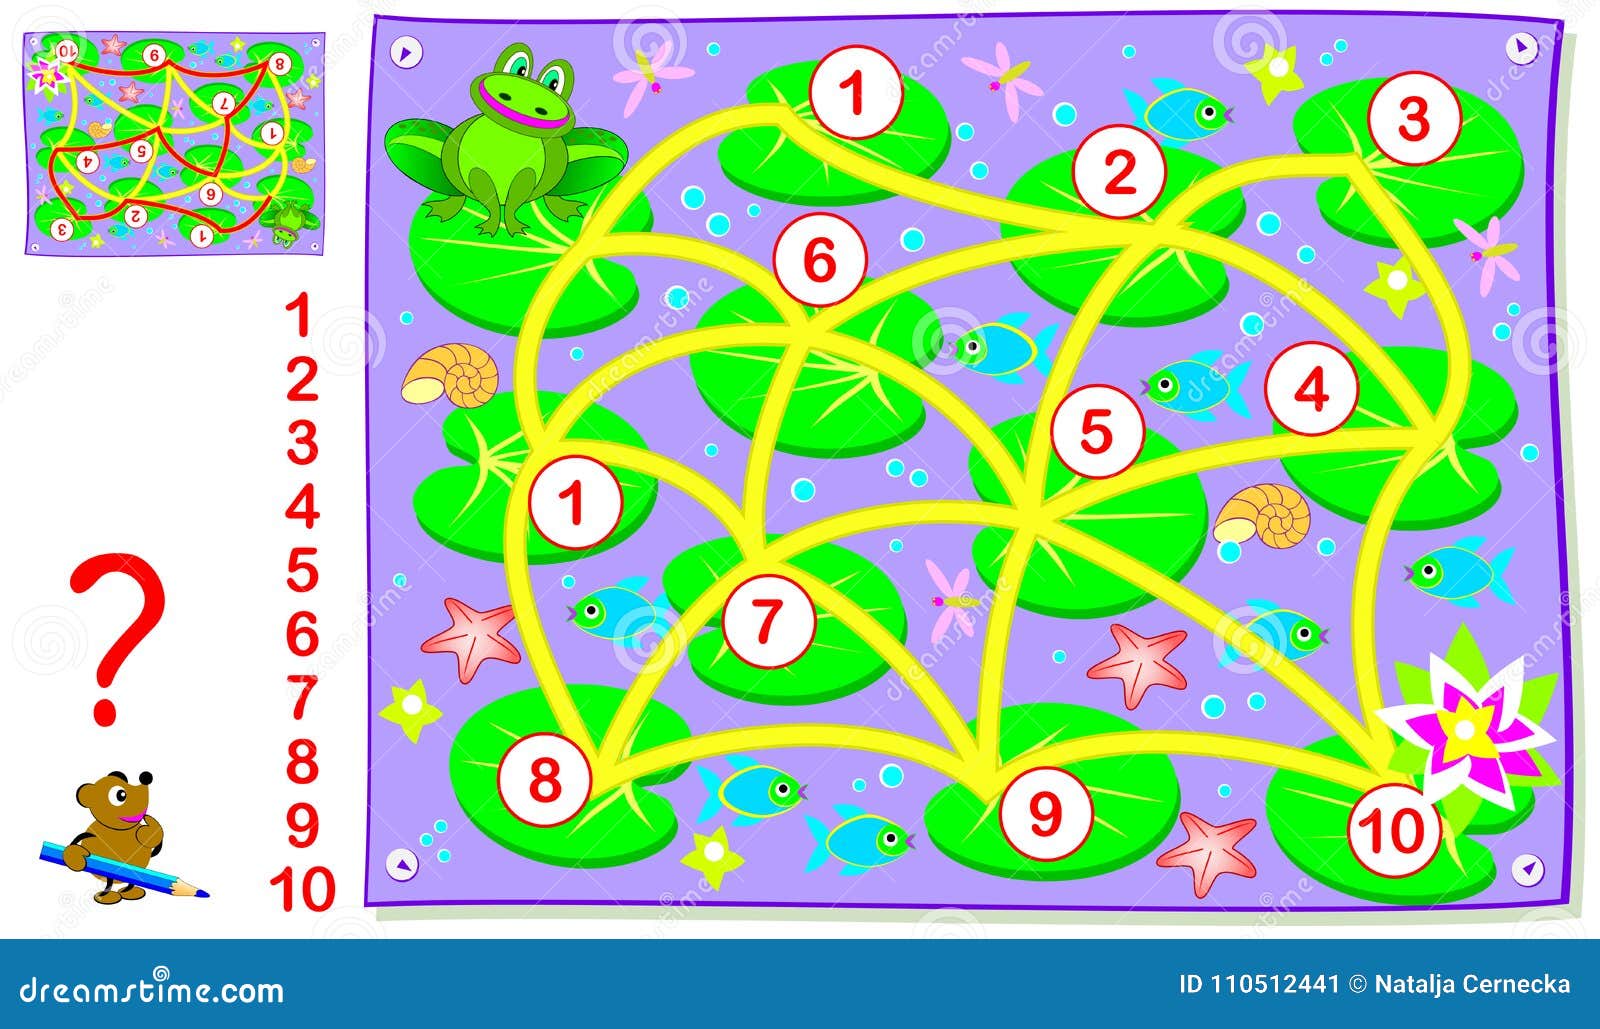 Игра соедини два. Головоломки с лягушками для детей 7-10. Весенние головоломки. Головоломки для детей 5 лет в зеленом фоне. Головоломки и ребусы распечатать для детей 13 лет.